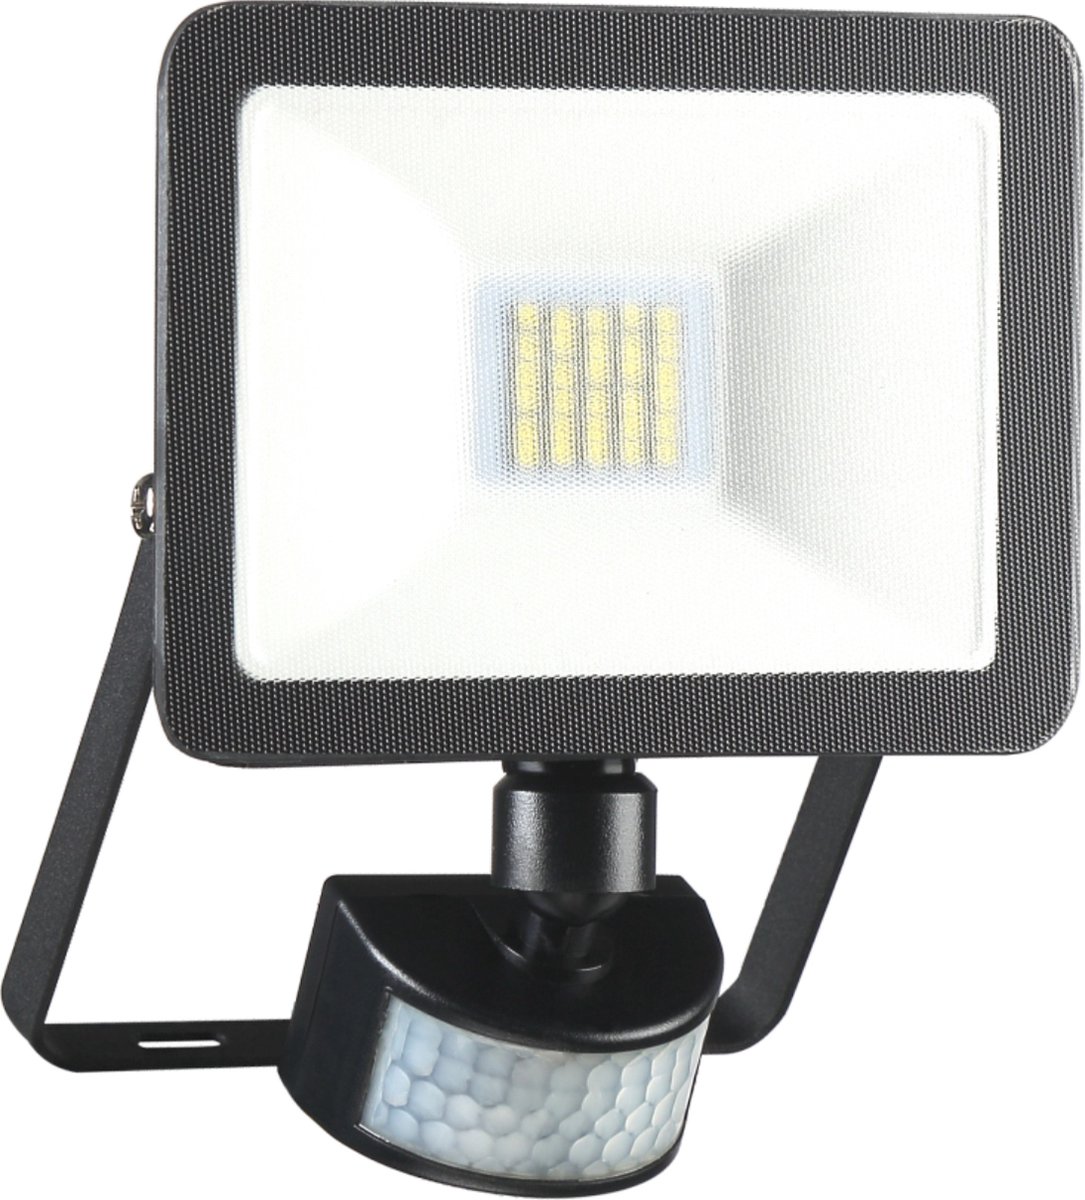 ELRO LF60 Design LED Buitenlamp met Bewegingssensor - 10W – 800LM – IP54 Waterdicht - Zwart - ELRO